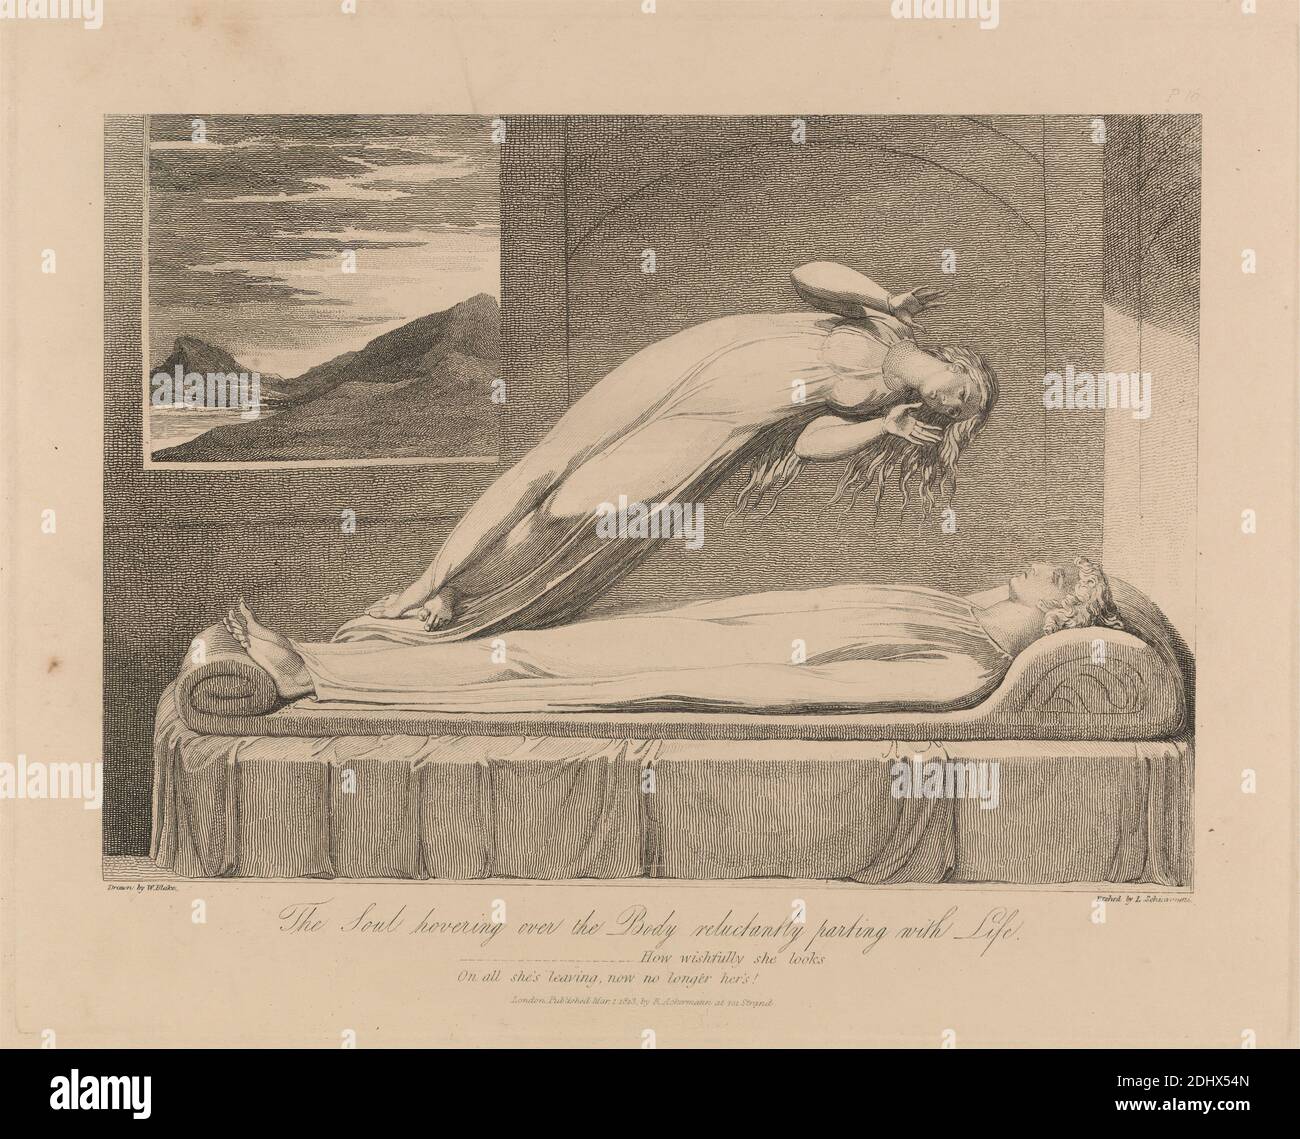 The Soul flotando sobre el cuerpo a regañadientes Parting with Life, impresión hecha por Luigi Schiavonetti, 1765–1810, italiano, después de William Blake, 1757–1827, británico, texto de Robert Blair, 1699–1746, británico, publicado por Rudolf Ackermann, 1764–1834, británico, 1808, publicado 1813, Etching sobre papel de textura moderada, hoja: 11 3/8 × 15 pulgadas (28.9 × 38.1 cm), placa: 8 3/8 × 10 1/2 pulgadas (21.3 × 26.7 cm), e imagen: 6 1/4 × 9 pulgadas (15.9 × 22.9 cm), cama, cuerpo, muerte, partida, miedo, vestidos, lago, vida, tema literario, anhelo, hombre, montañas, religiosos y mitológicos Foto de stock